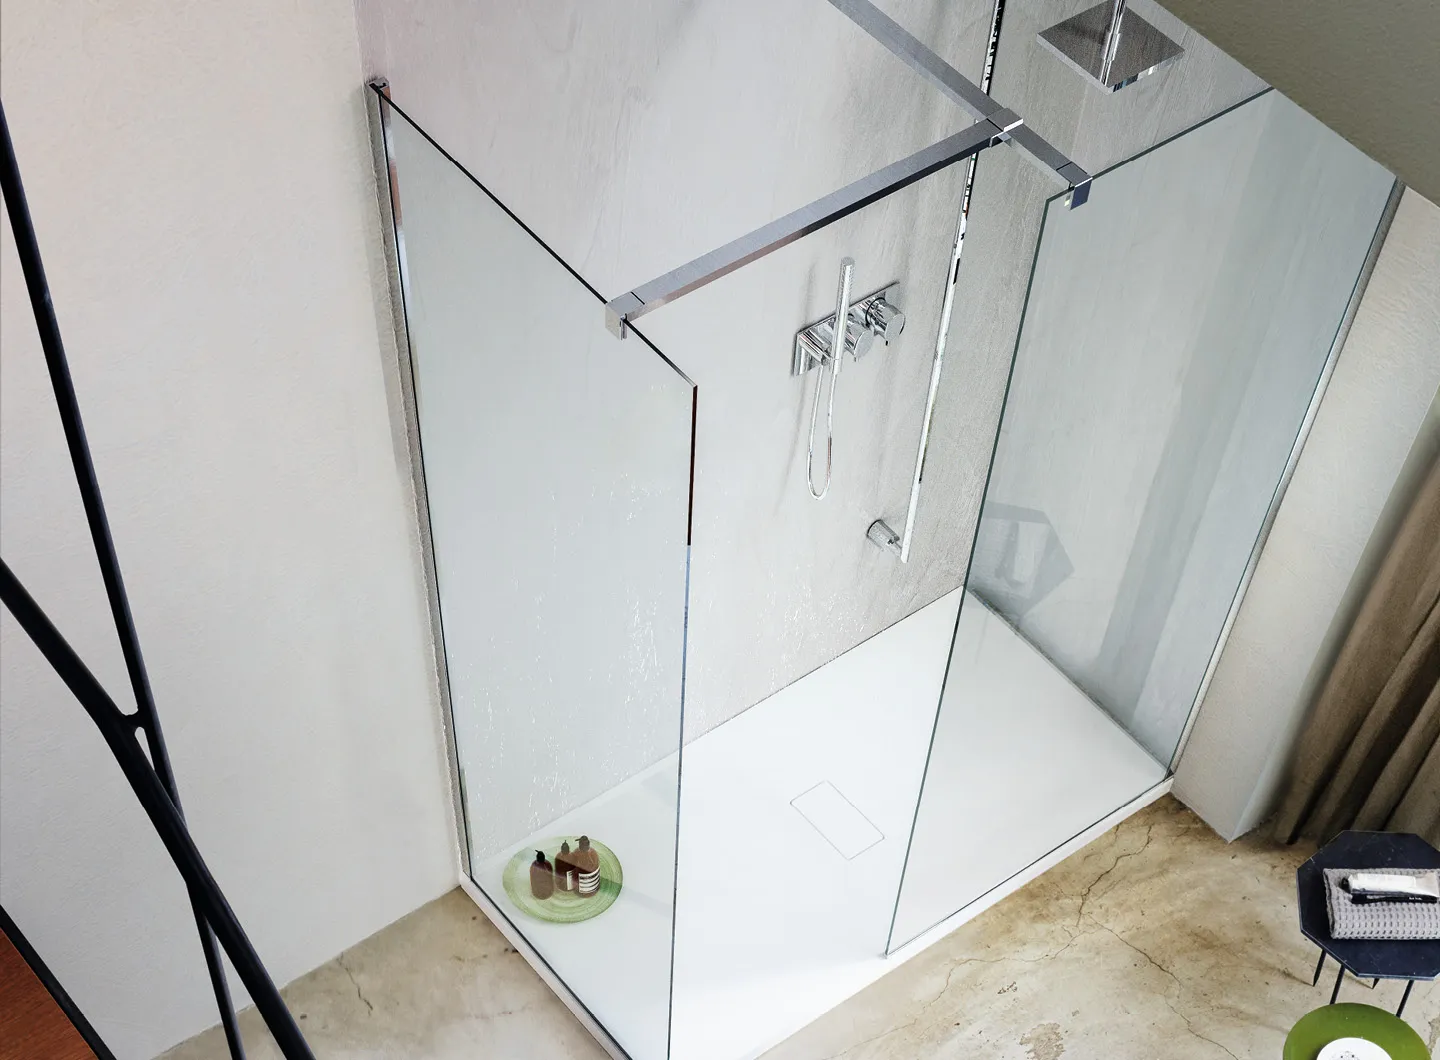 Vismaravetro - box doccia senza porta - SK-IN